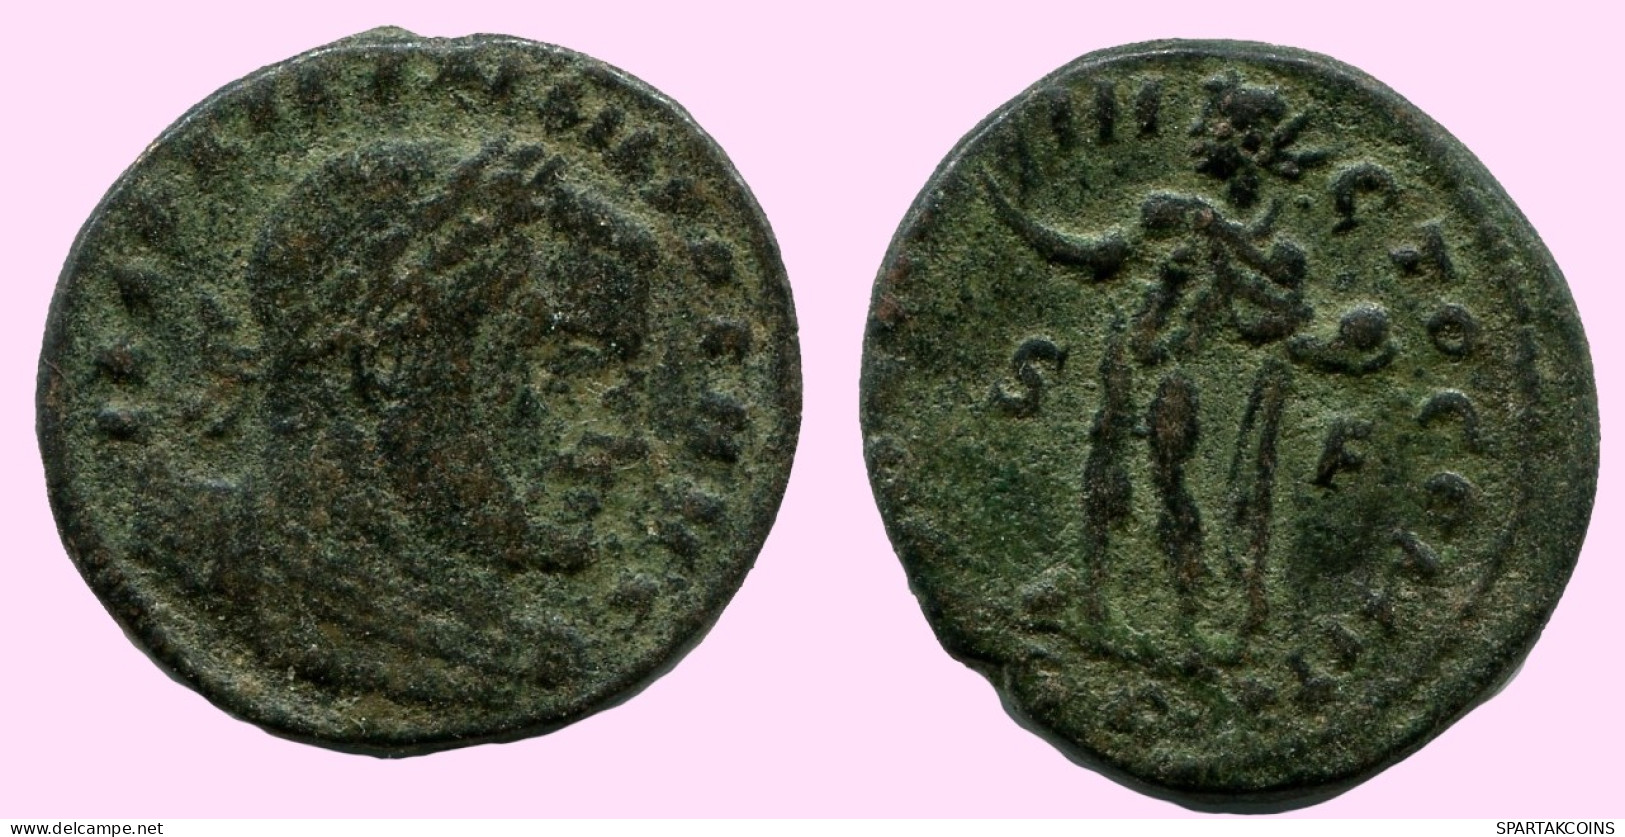 CONSTANTINE I Auténtico Original Romano ANTIGUOBronze Moneda #ANC12235.12.E.A - El Impero Christiano (307 / 363)